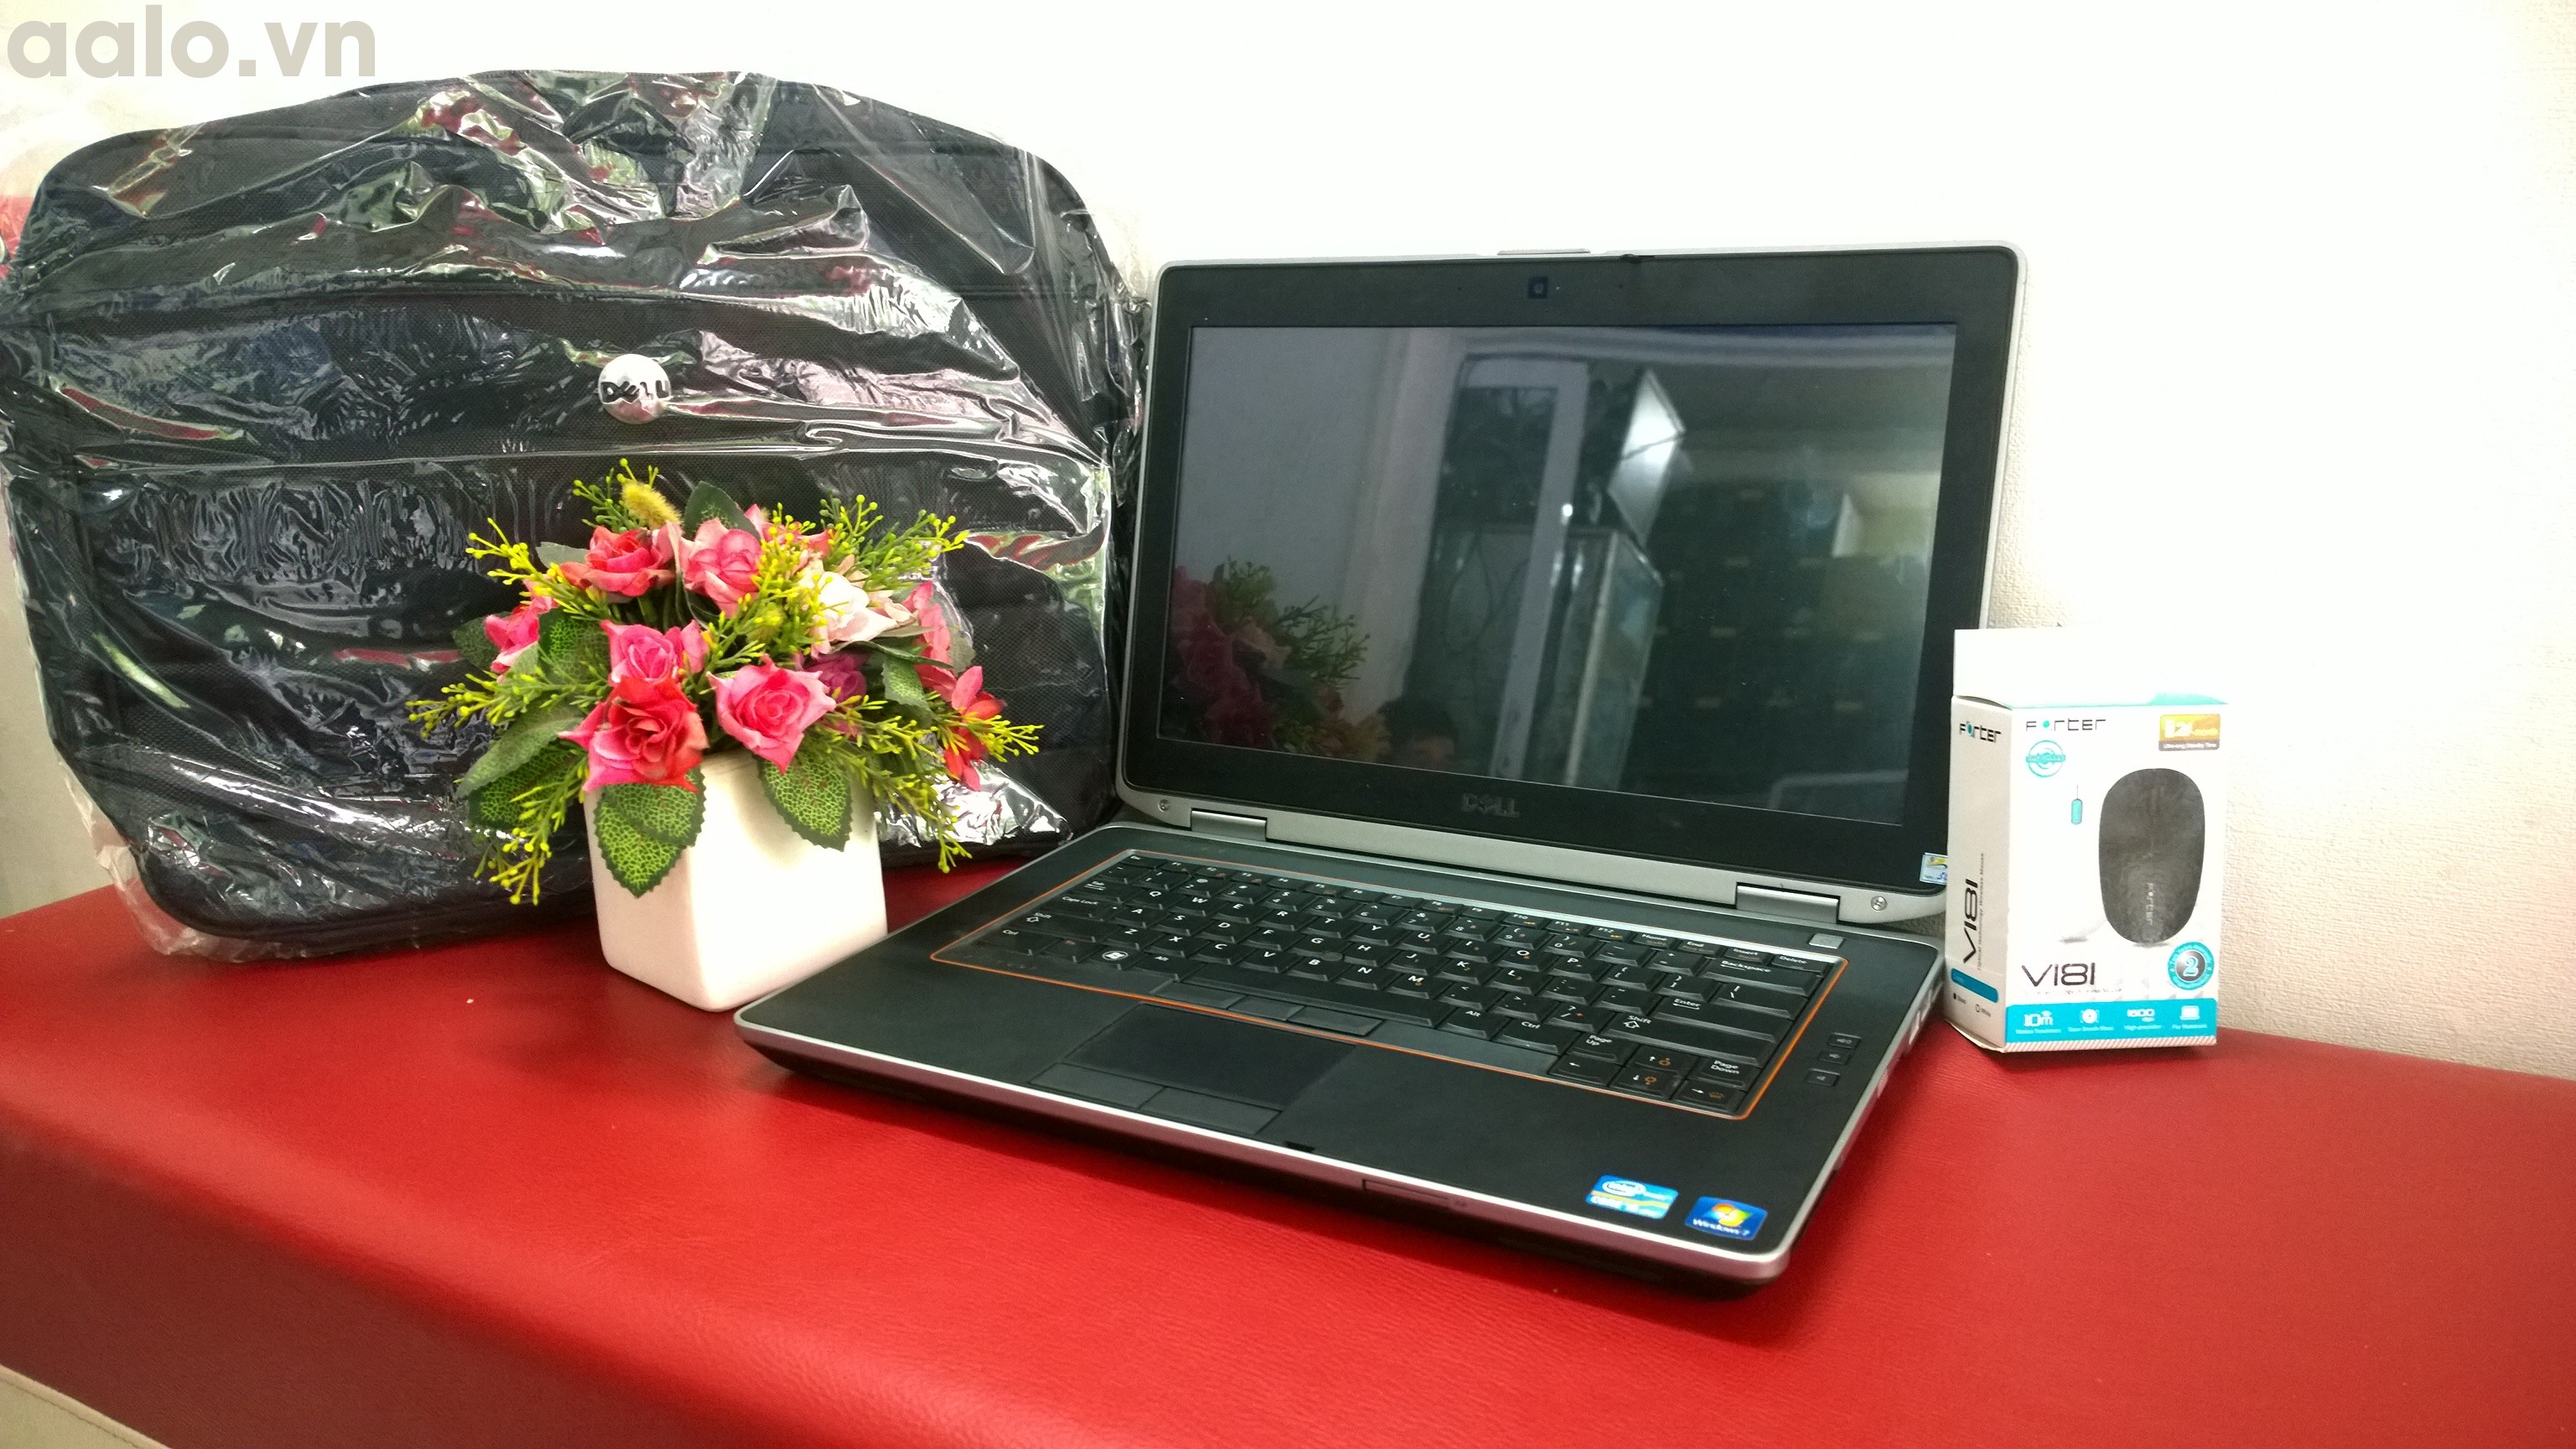 Laptop Dell Latitude E6420 cũ (Core i5 2520M, 4GB, 250GB, Intel HD Graphics 3000, 14 inch) - bảo hành 1 năm